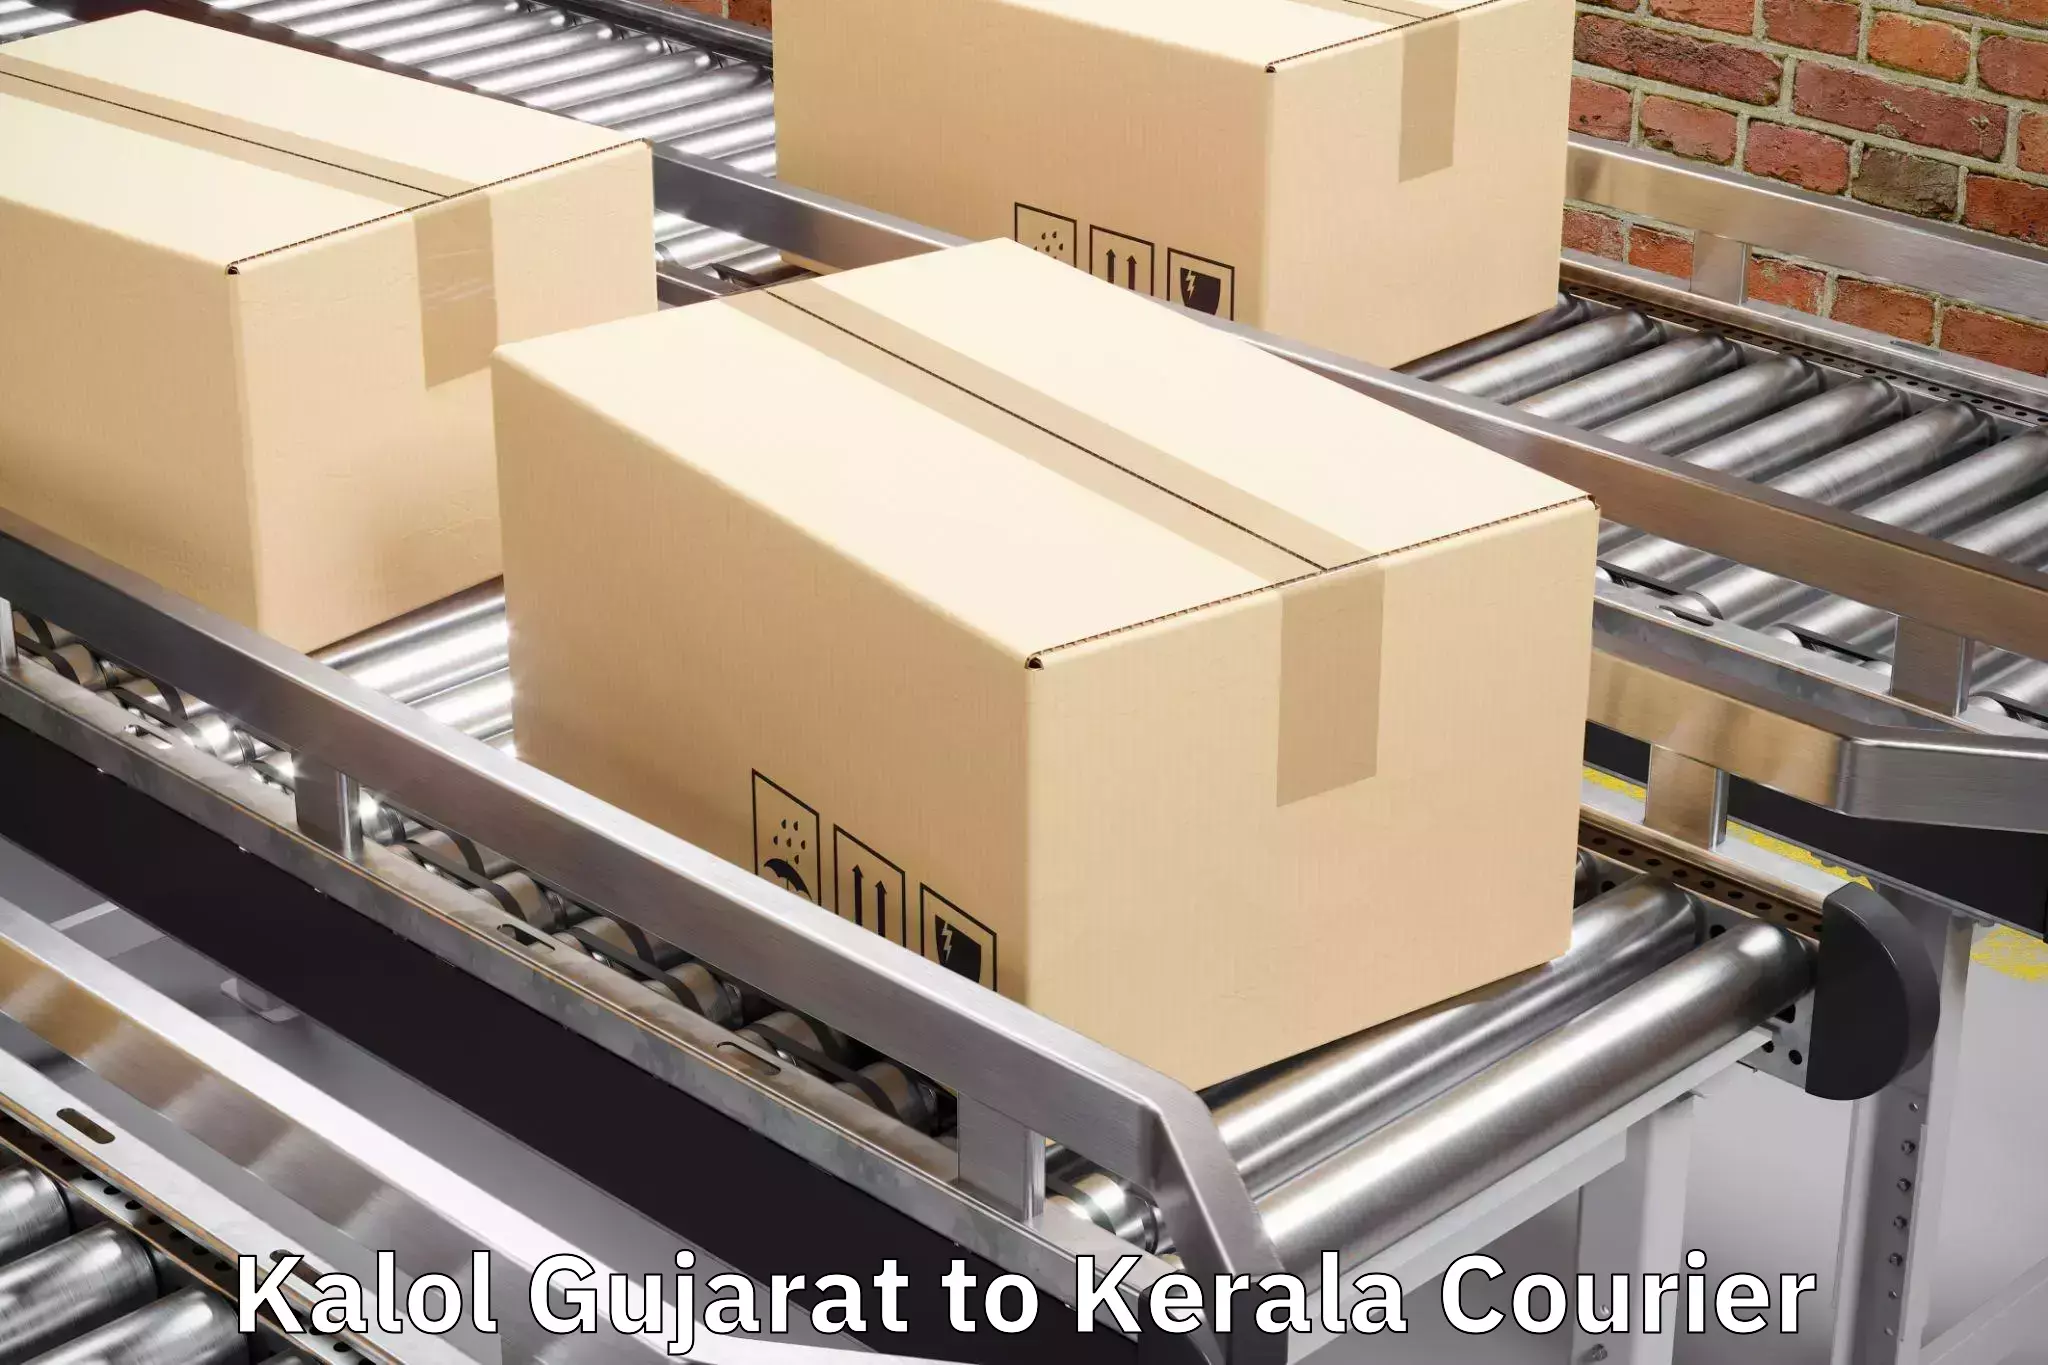 Luggage transport service Kalol Gujarat to Wayanad